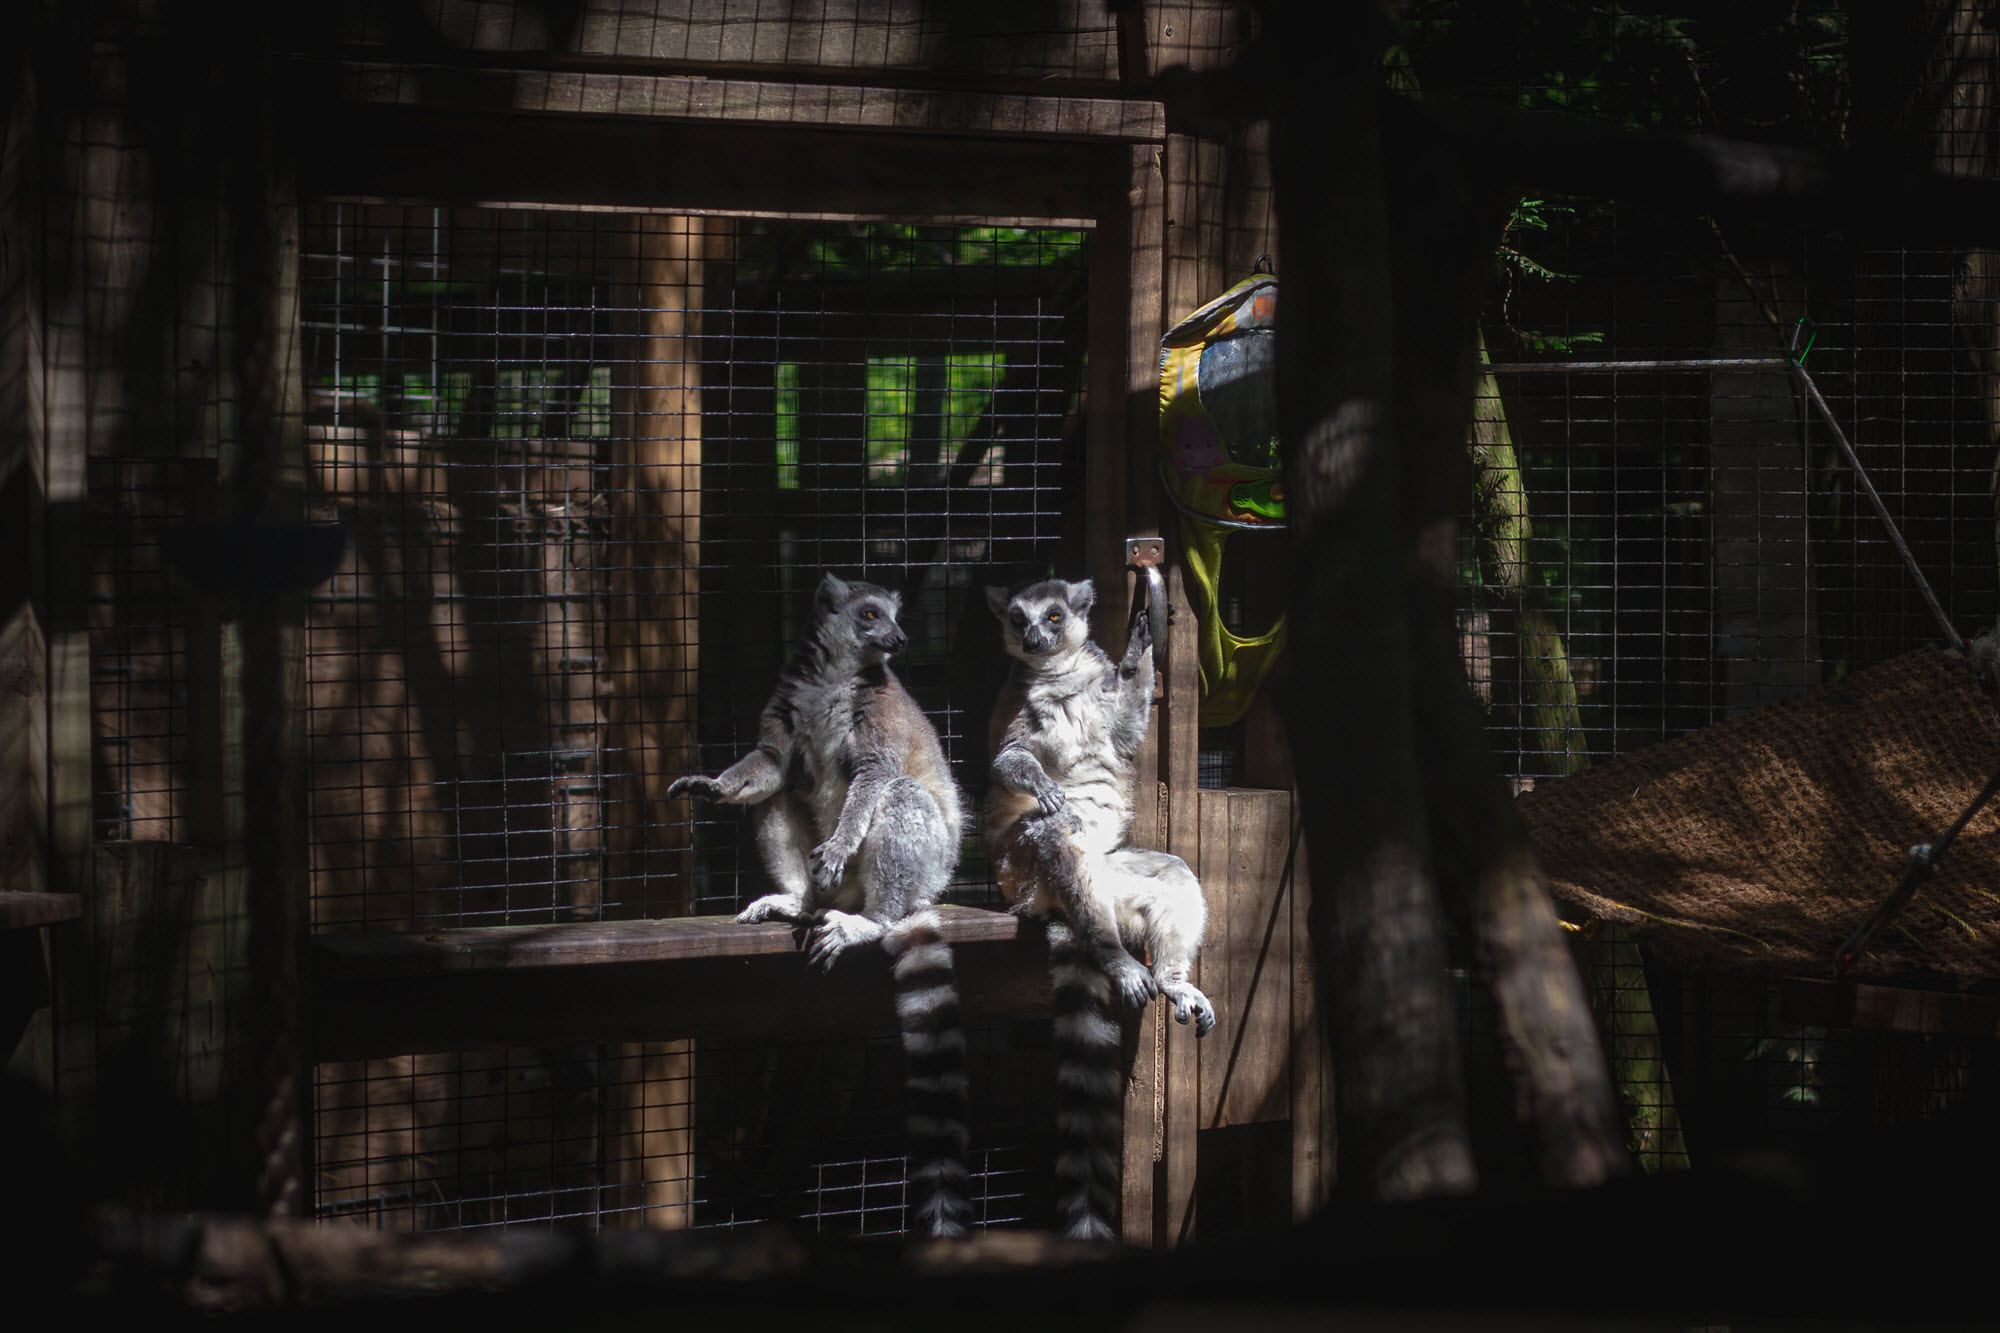 Image shows lemurs in enclosure at Killman Zoo.